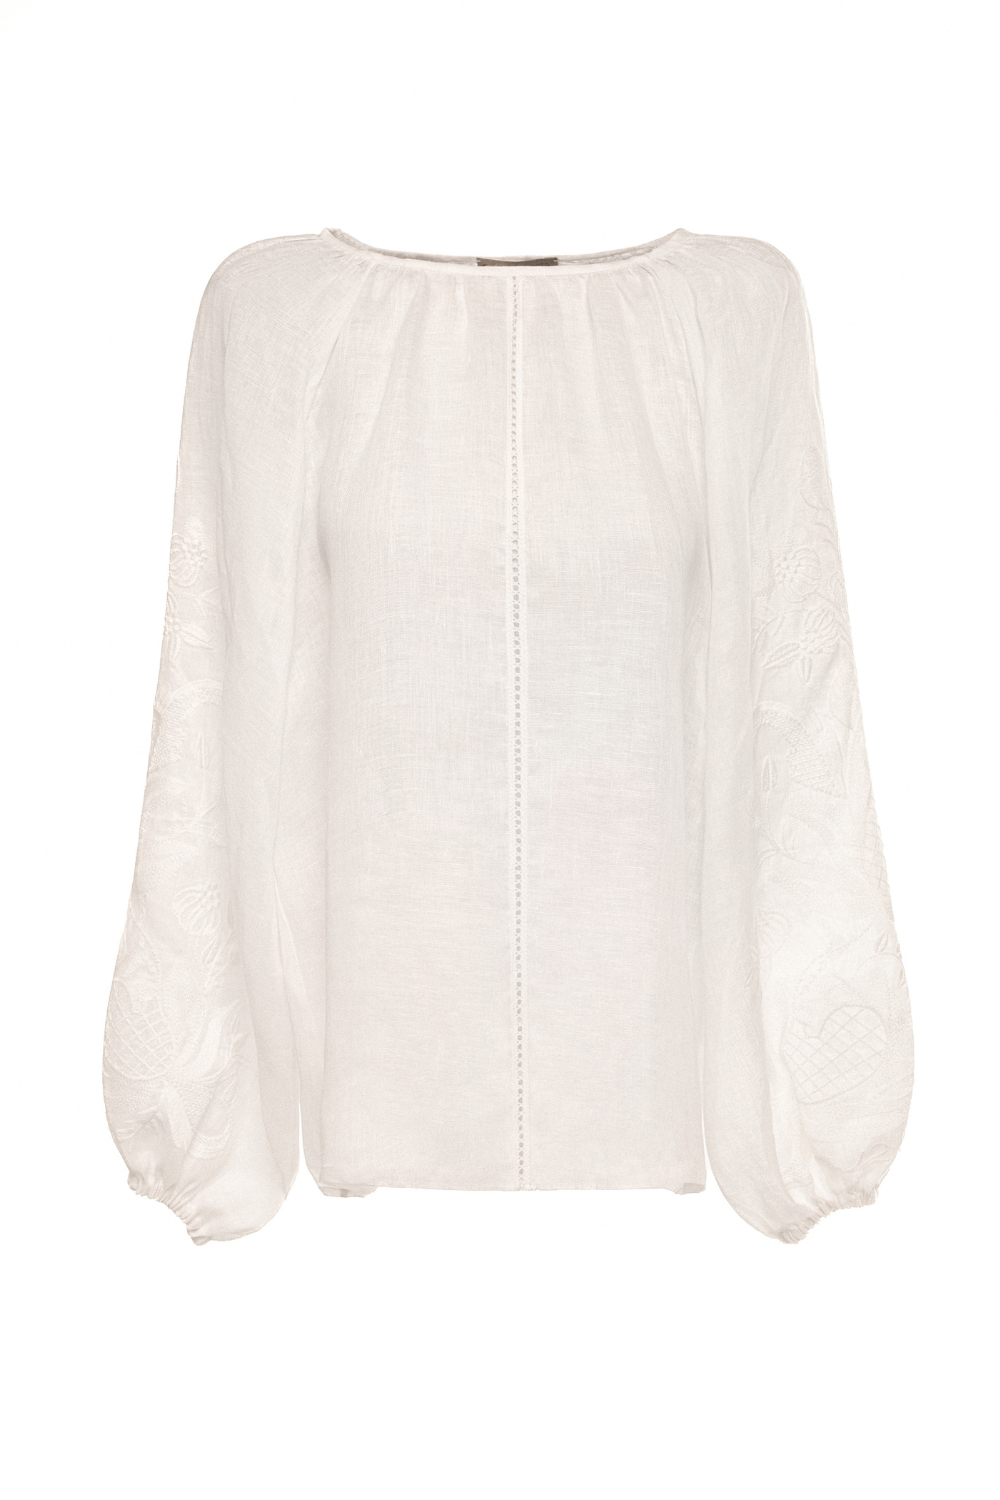 Блузка за традиційними мотивами сорочки з дизайнерською вишивкою Гранатова лоза (біле по білому) (Гаптування) G_0022